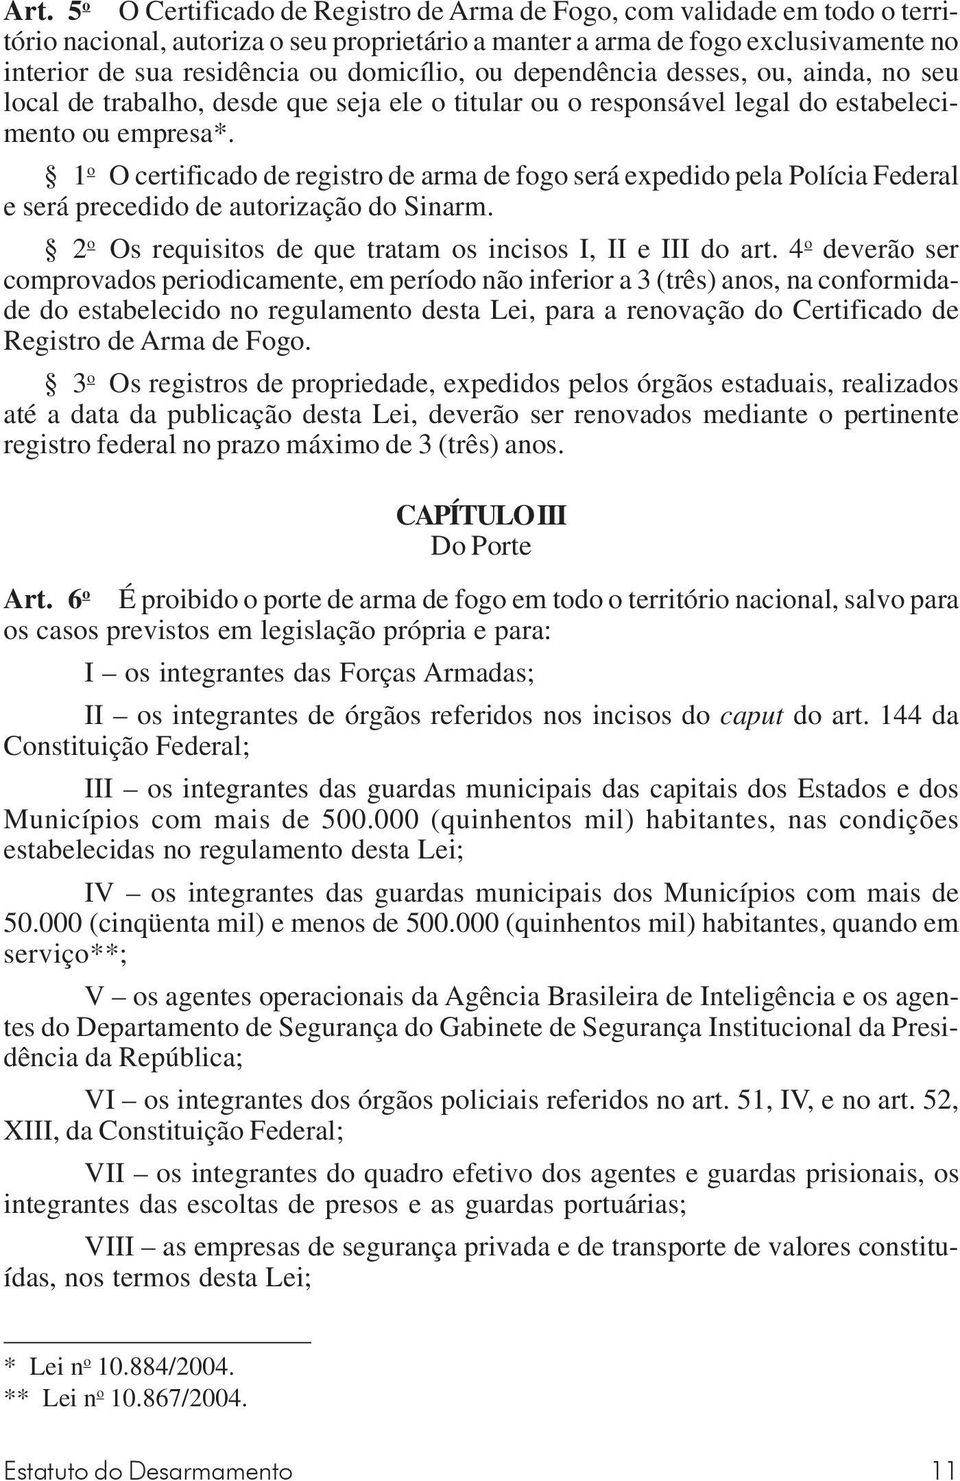 1 o O certificado de registro de arma de fogo será expedido pela Polícia Federal e será precedido de autorização do Sinarm. 2 o Os requisitos de que tratam os incisos I, II e III do art.